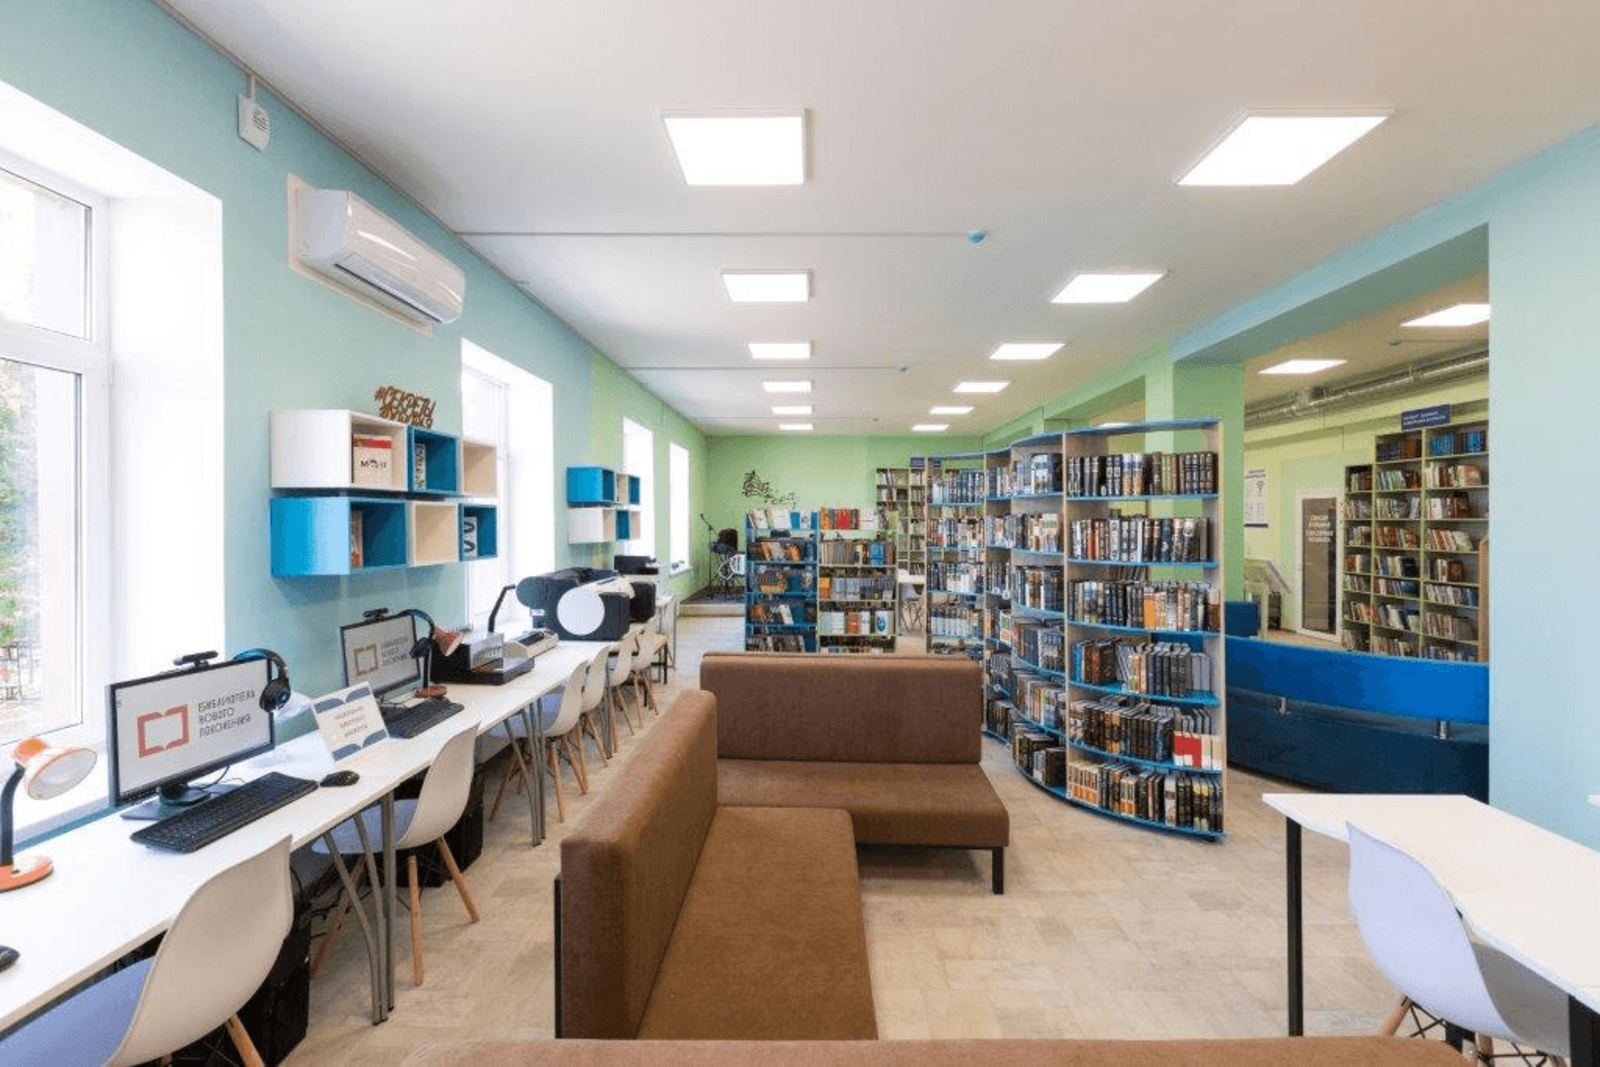 В селе Старокалмашево Чекмагушевского района откроется библиотека нового поколения в рамках нацпроекта "Культура"